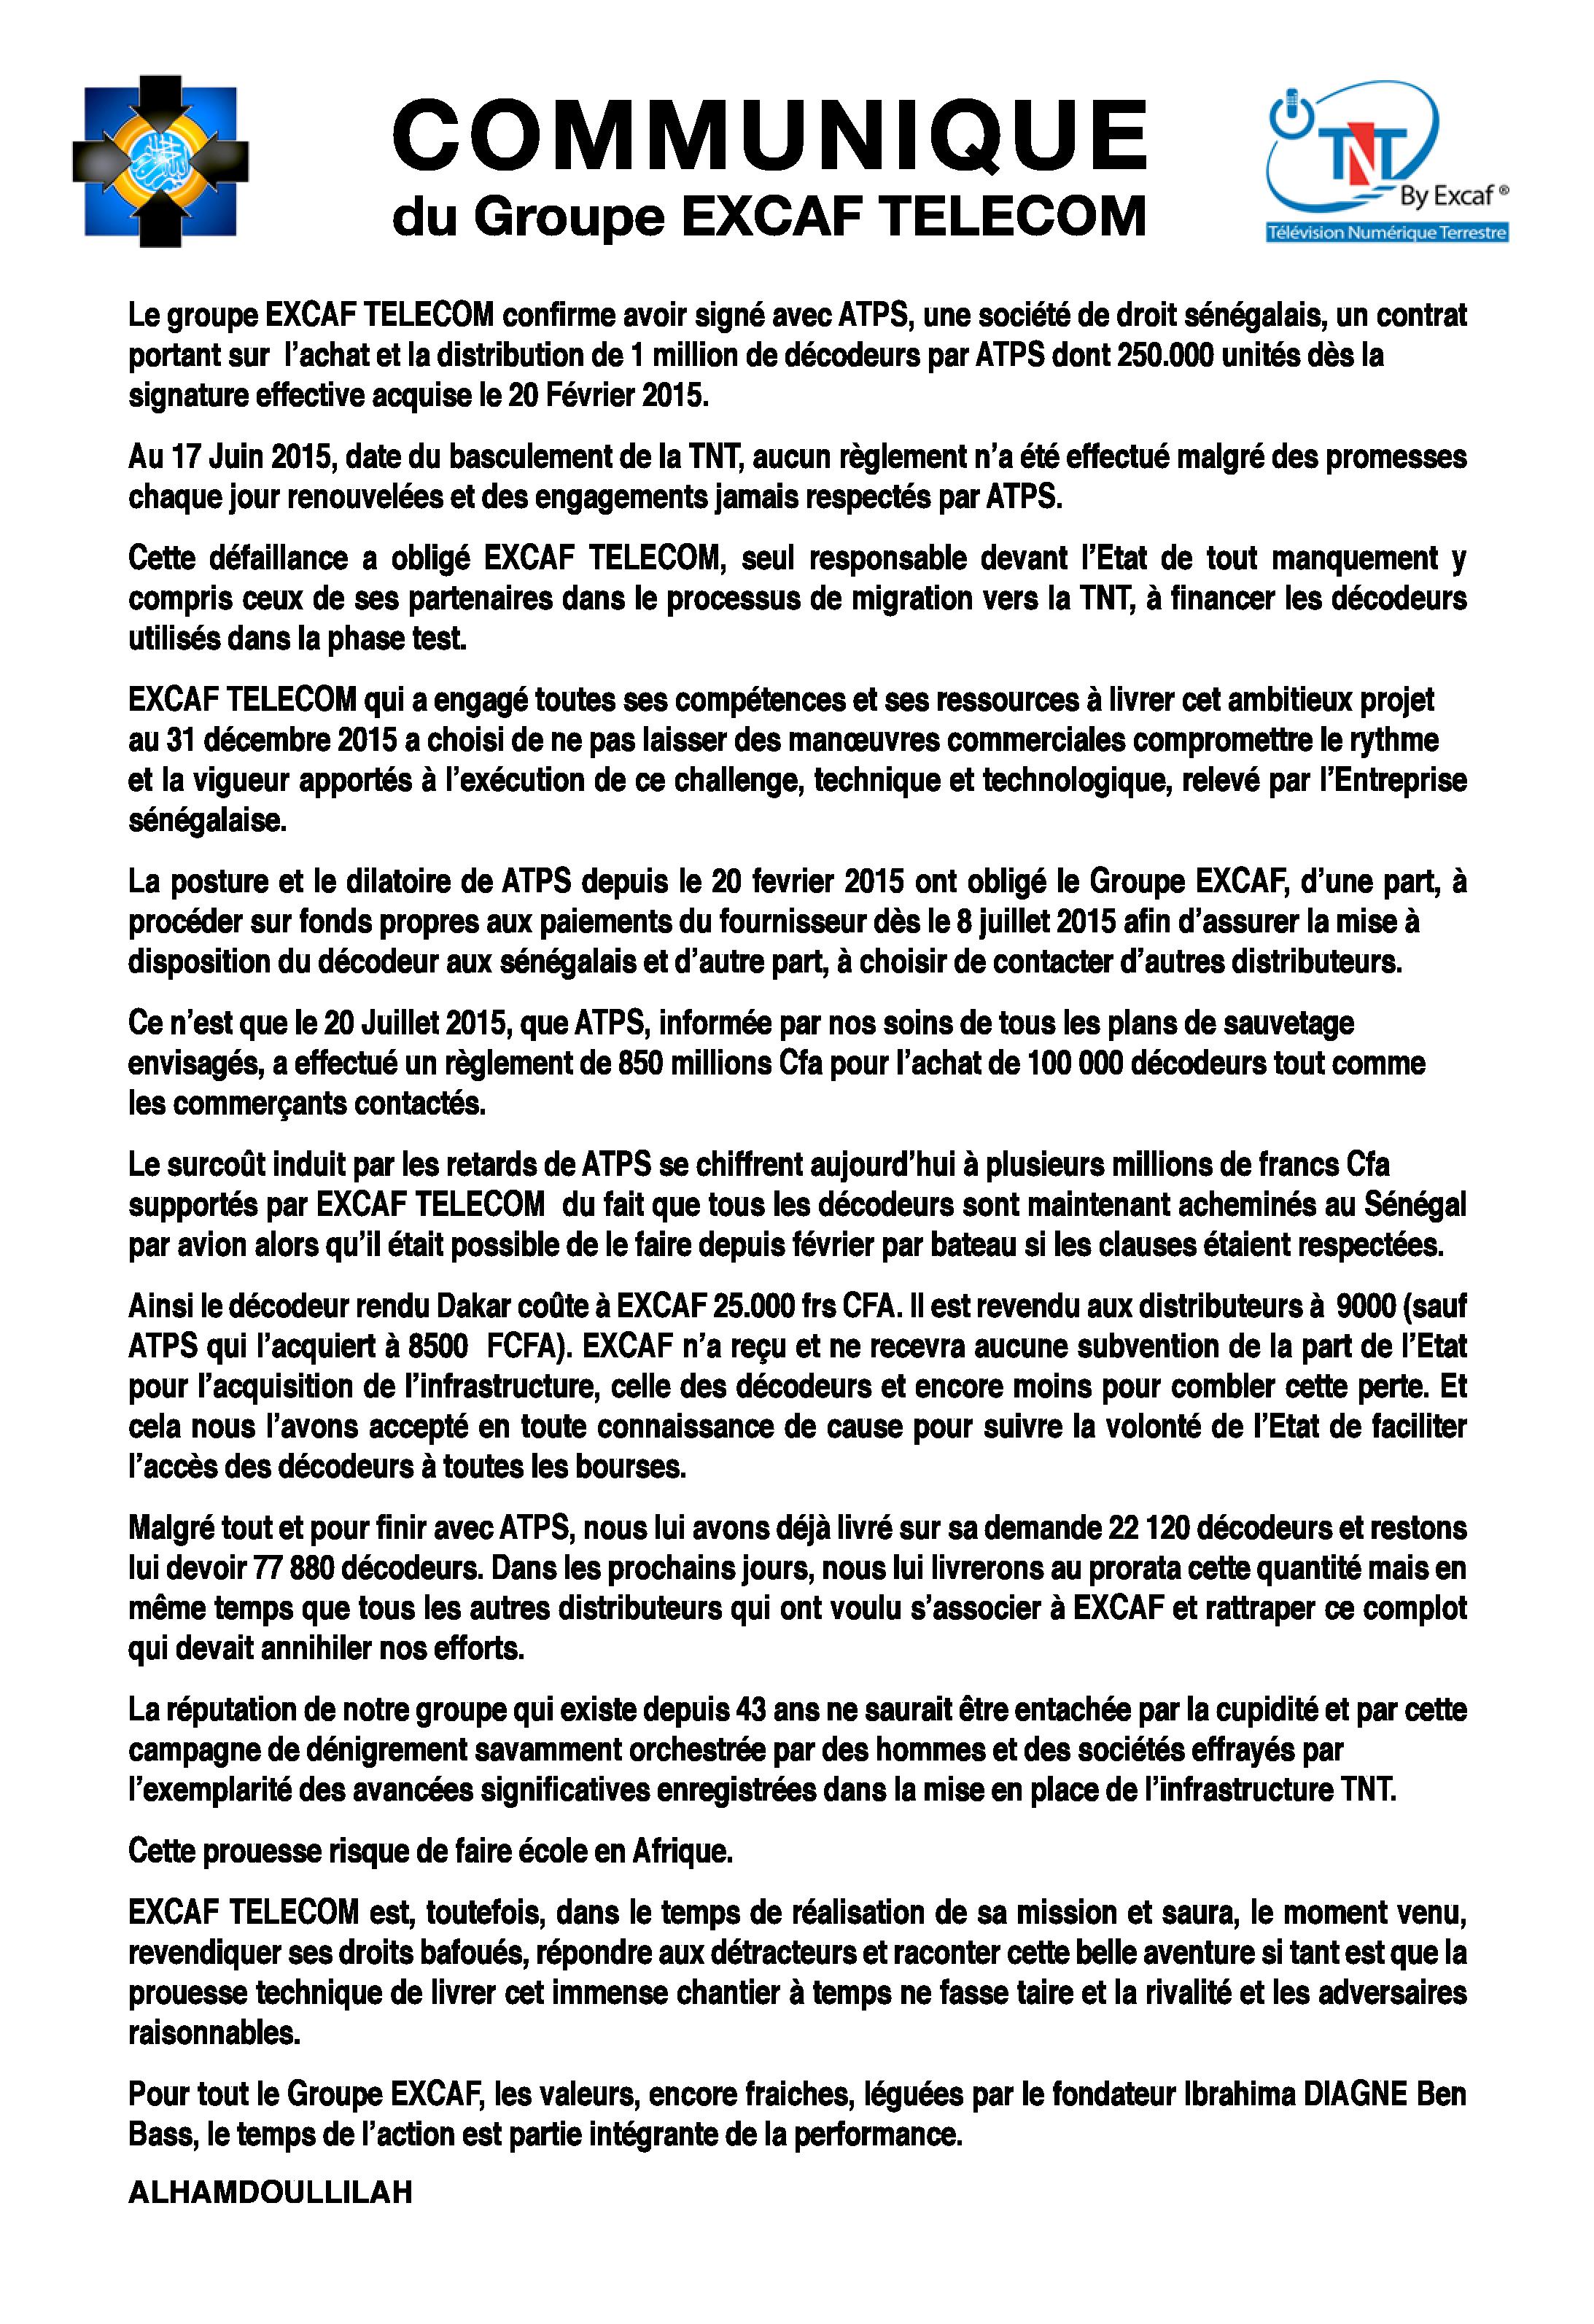 ACHAT ET DISTRIBUTION DE DÉCODEURS TNT : EXCAF confirme avoir signé avec ATPS qui n'a pas respecté ses engagements